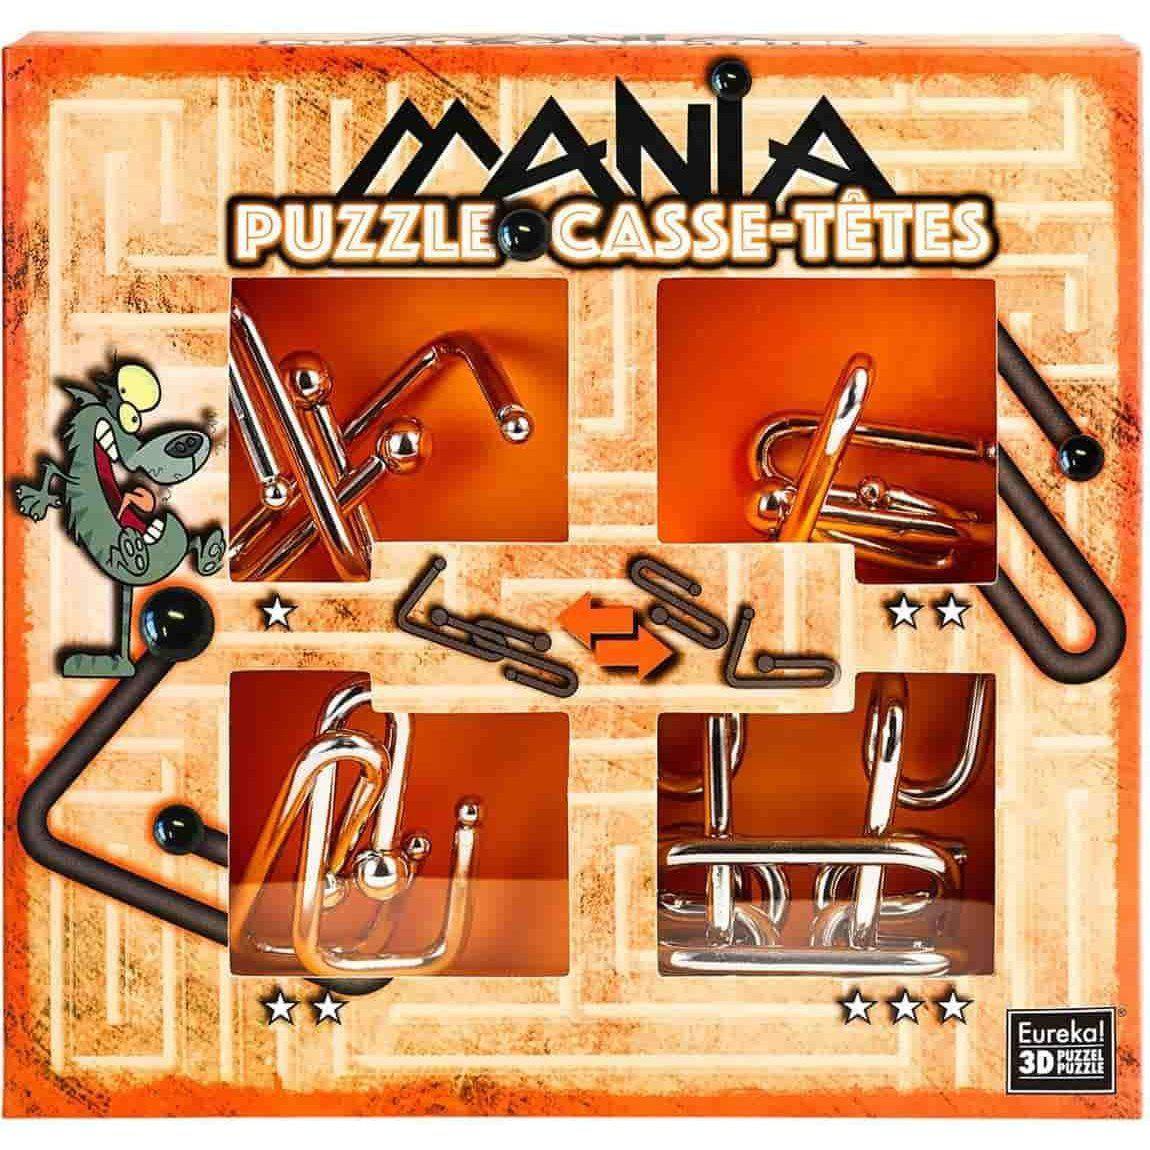 Puzzle mania casse-tetes orange-Eureka Puzzle-1-Játszma.ro - A maradandó élmények boltja